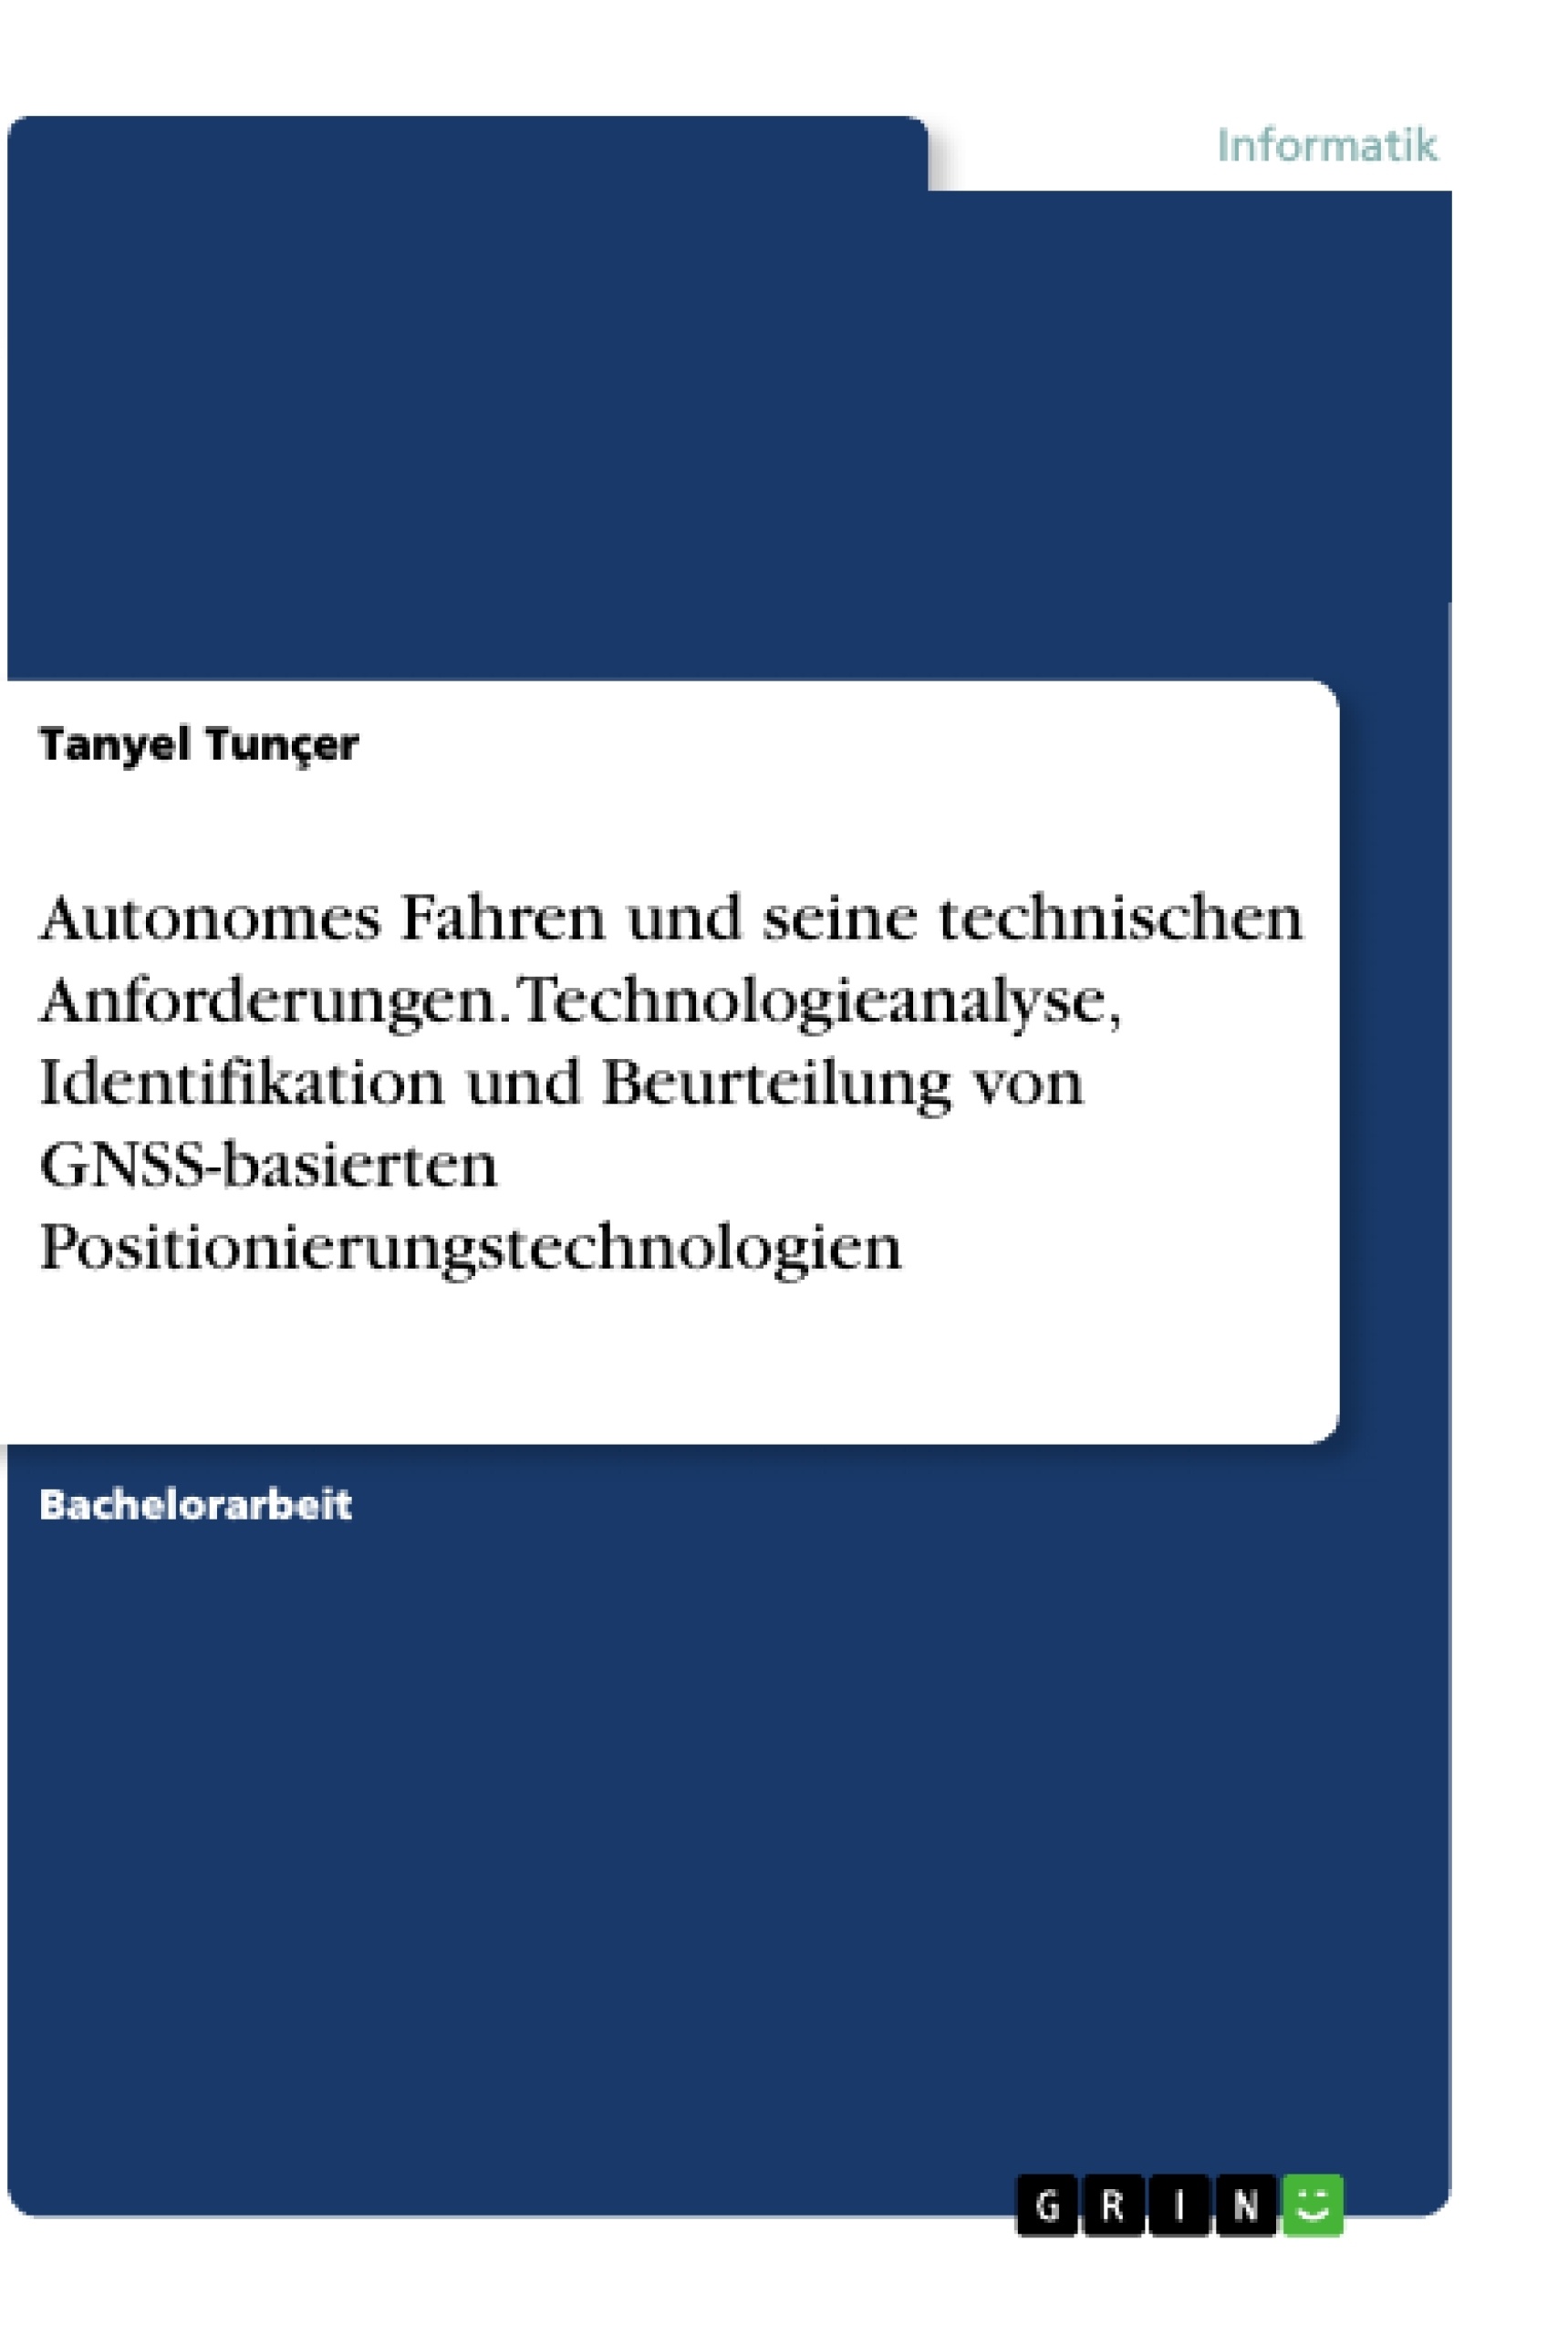 Title: Autonomes Fahren und seine technischen Anforderungen. Technologieanalyse, Identifikation und Beurteilung von GNSS-basierten Positionierungstechnologien